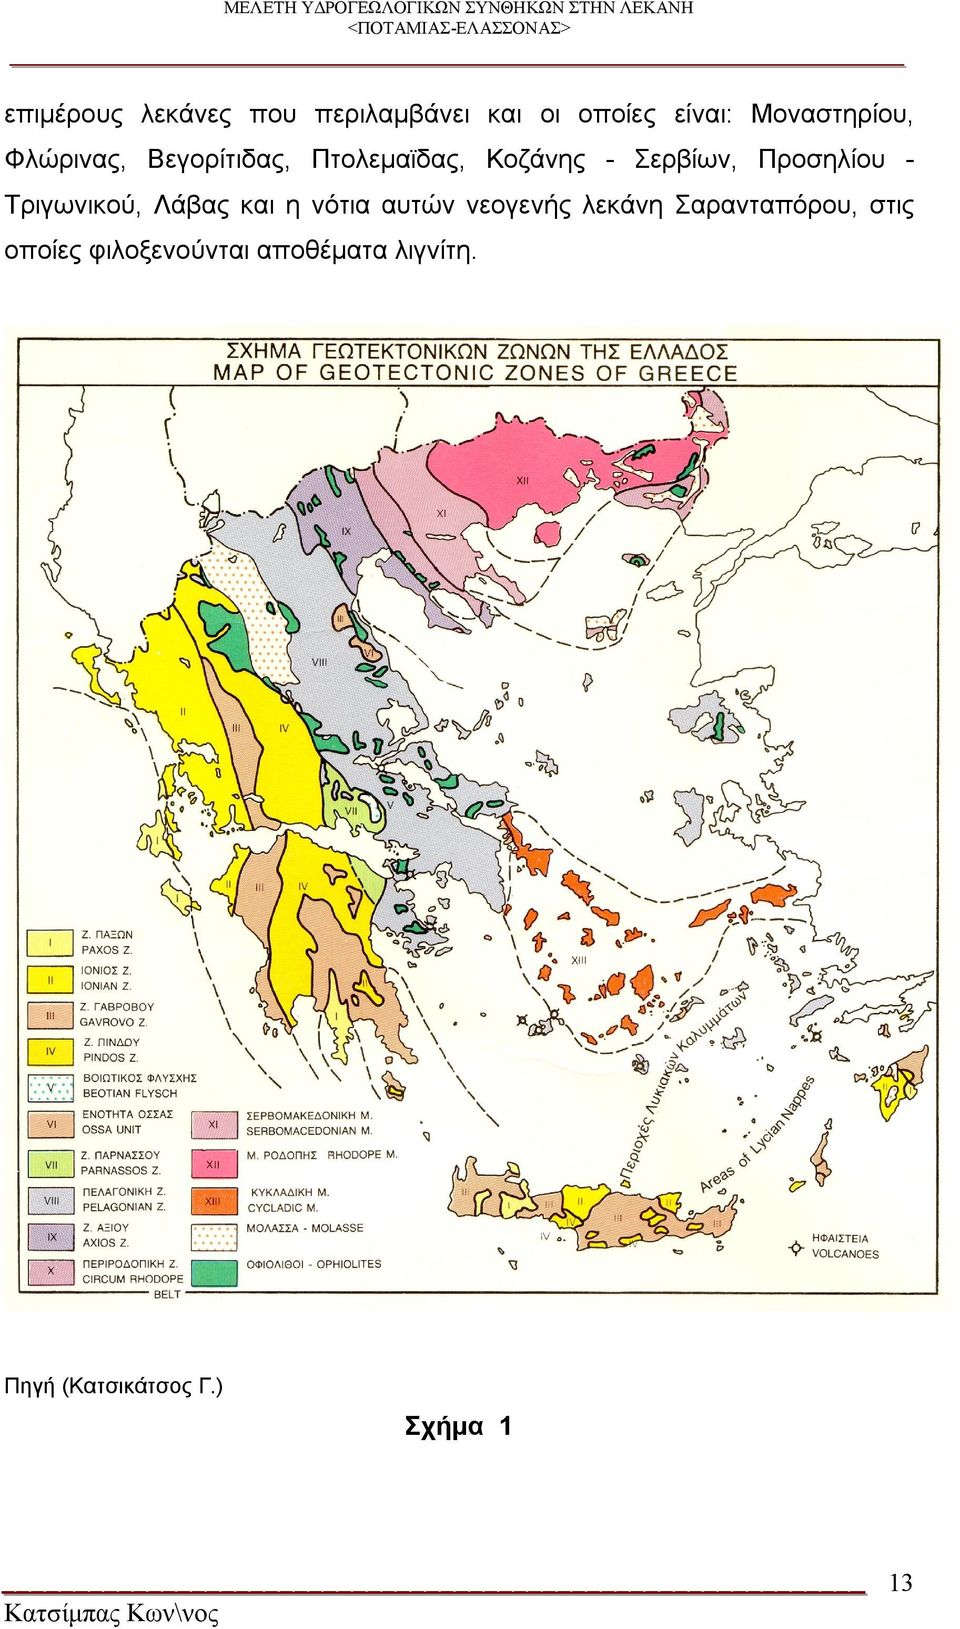 Σερβίων, Προσηλίου Τριγωνικού, Λάβας και η νότια αυτών νεογενής λεκάνη